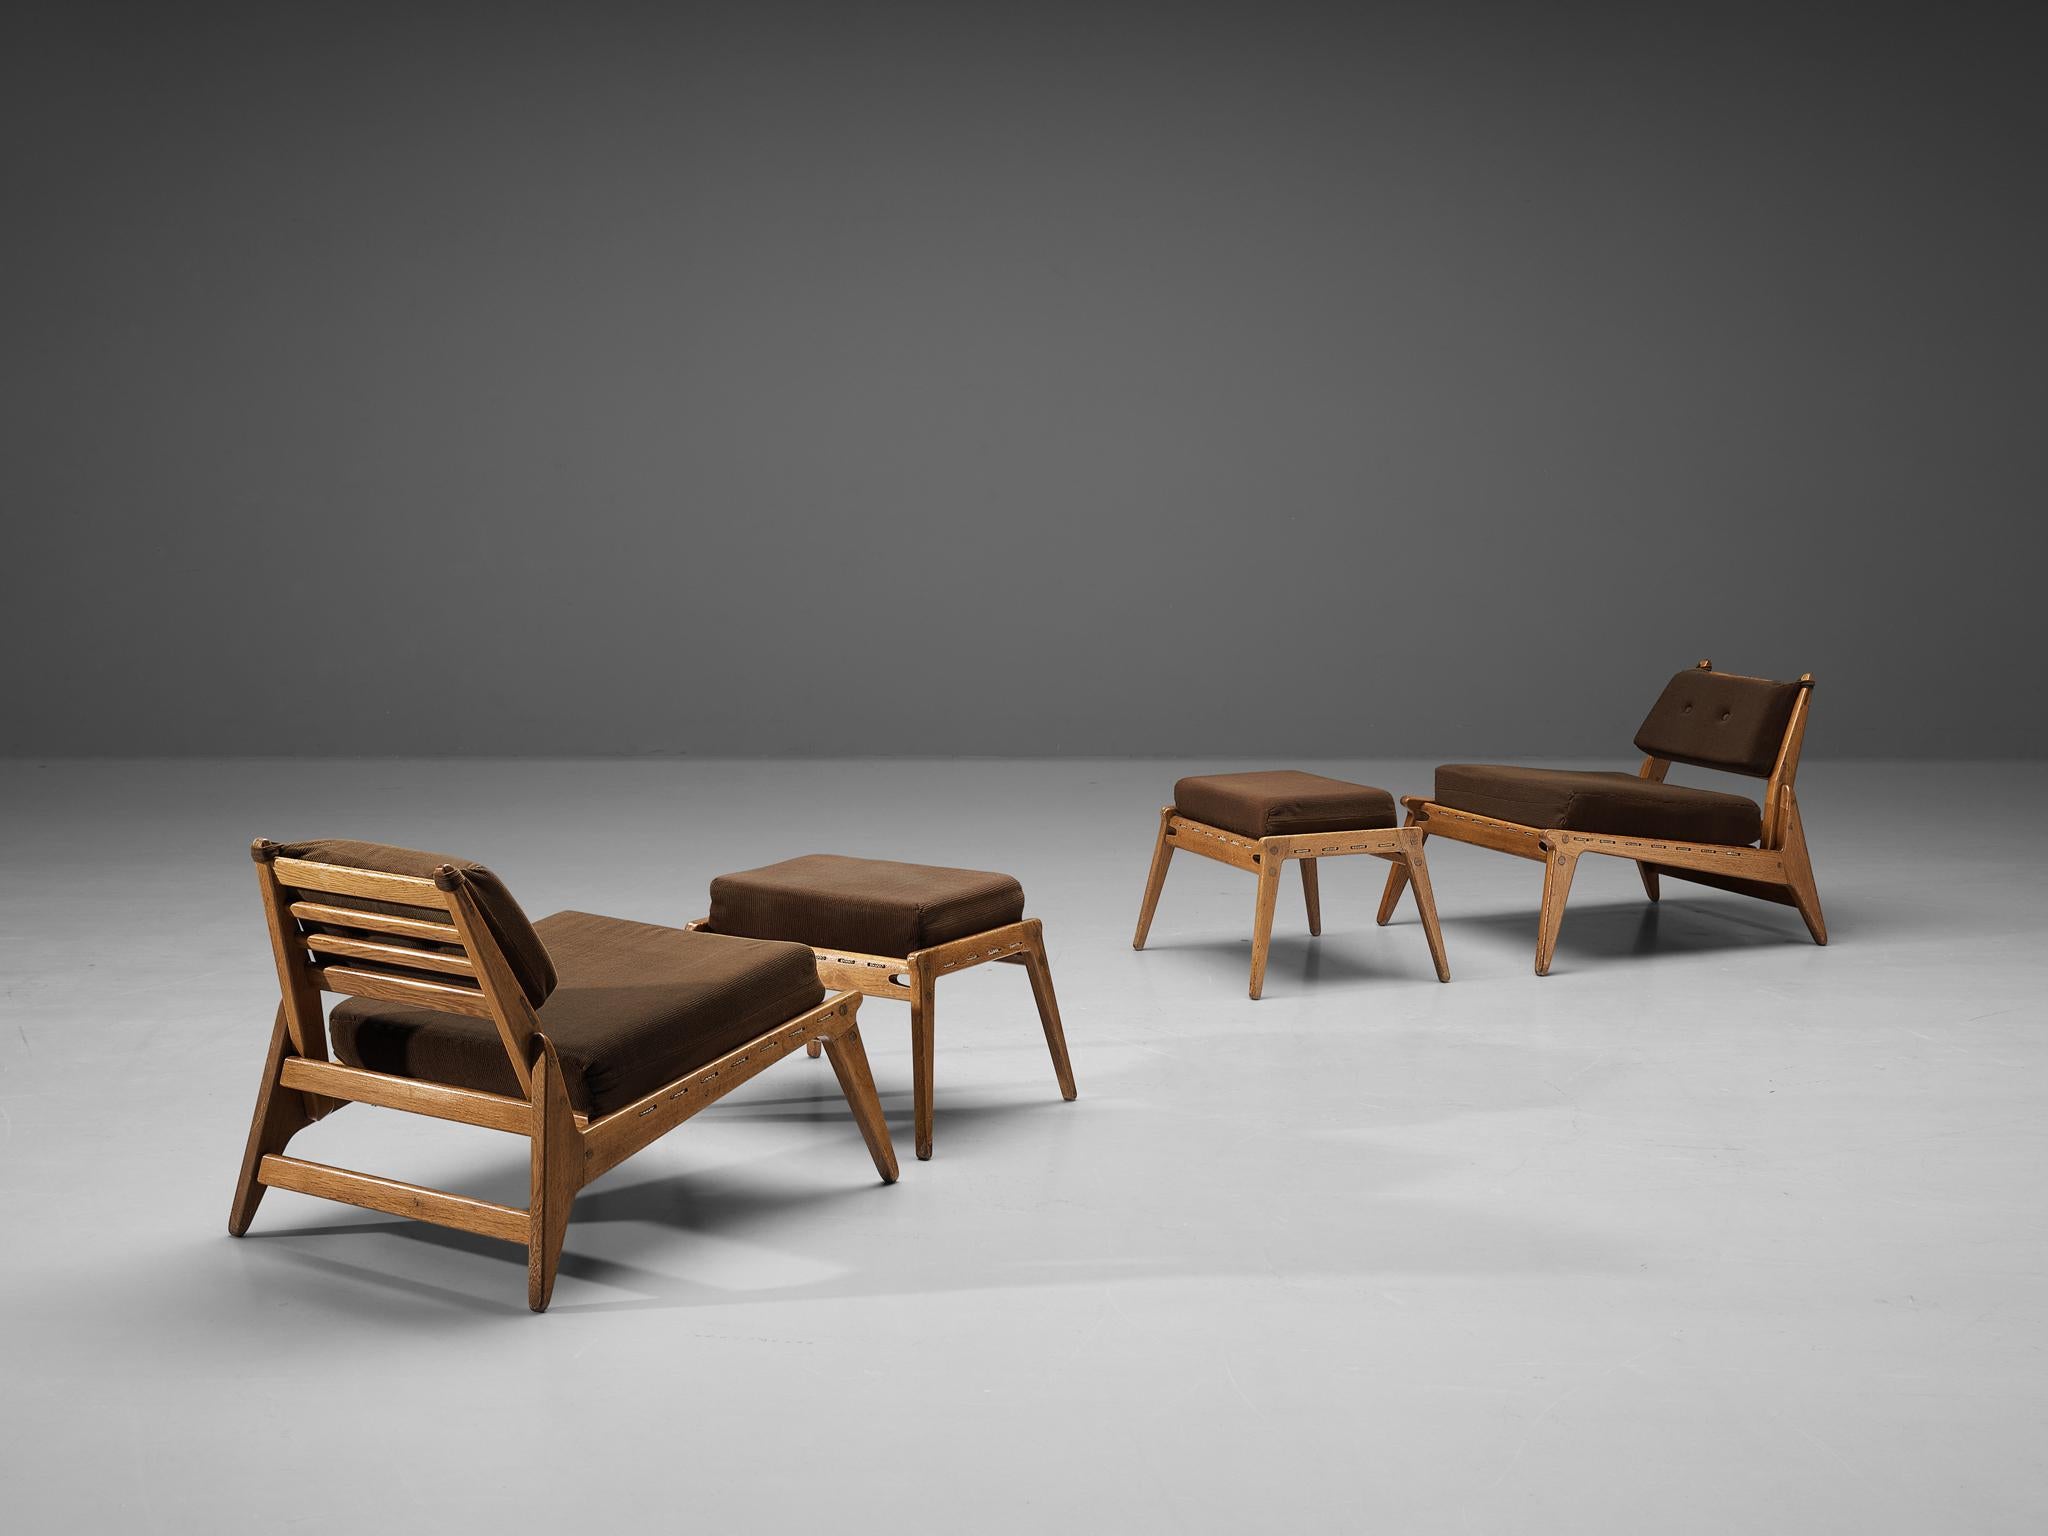 Paire de chaises longues avec ottomans, chêne, tissu, Allemagne, années 1950

Modeste ensemble de deux chaises longues avec deux ottomans. Ces chaises de chasse relaxantes présentent un design minimal de base avec un excellent travail du bois,